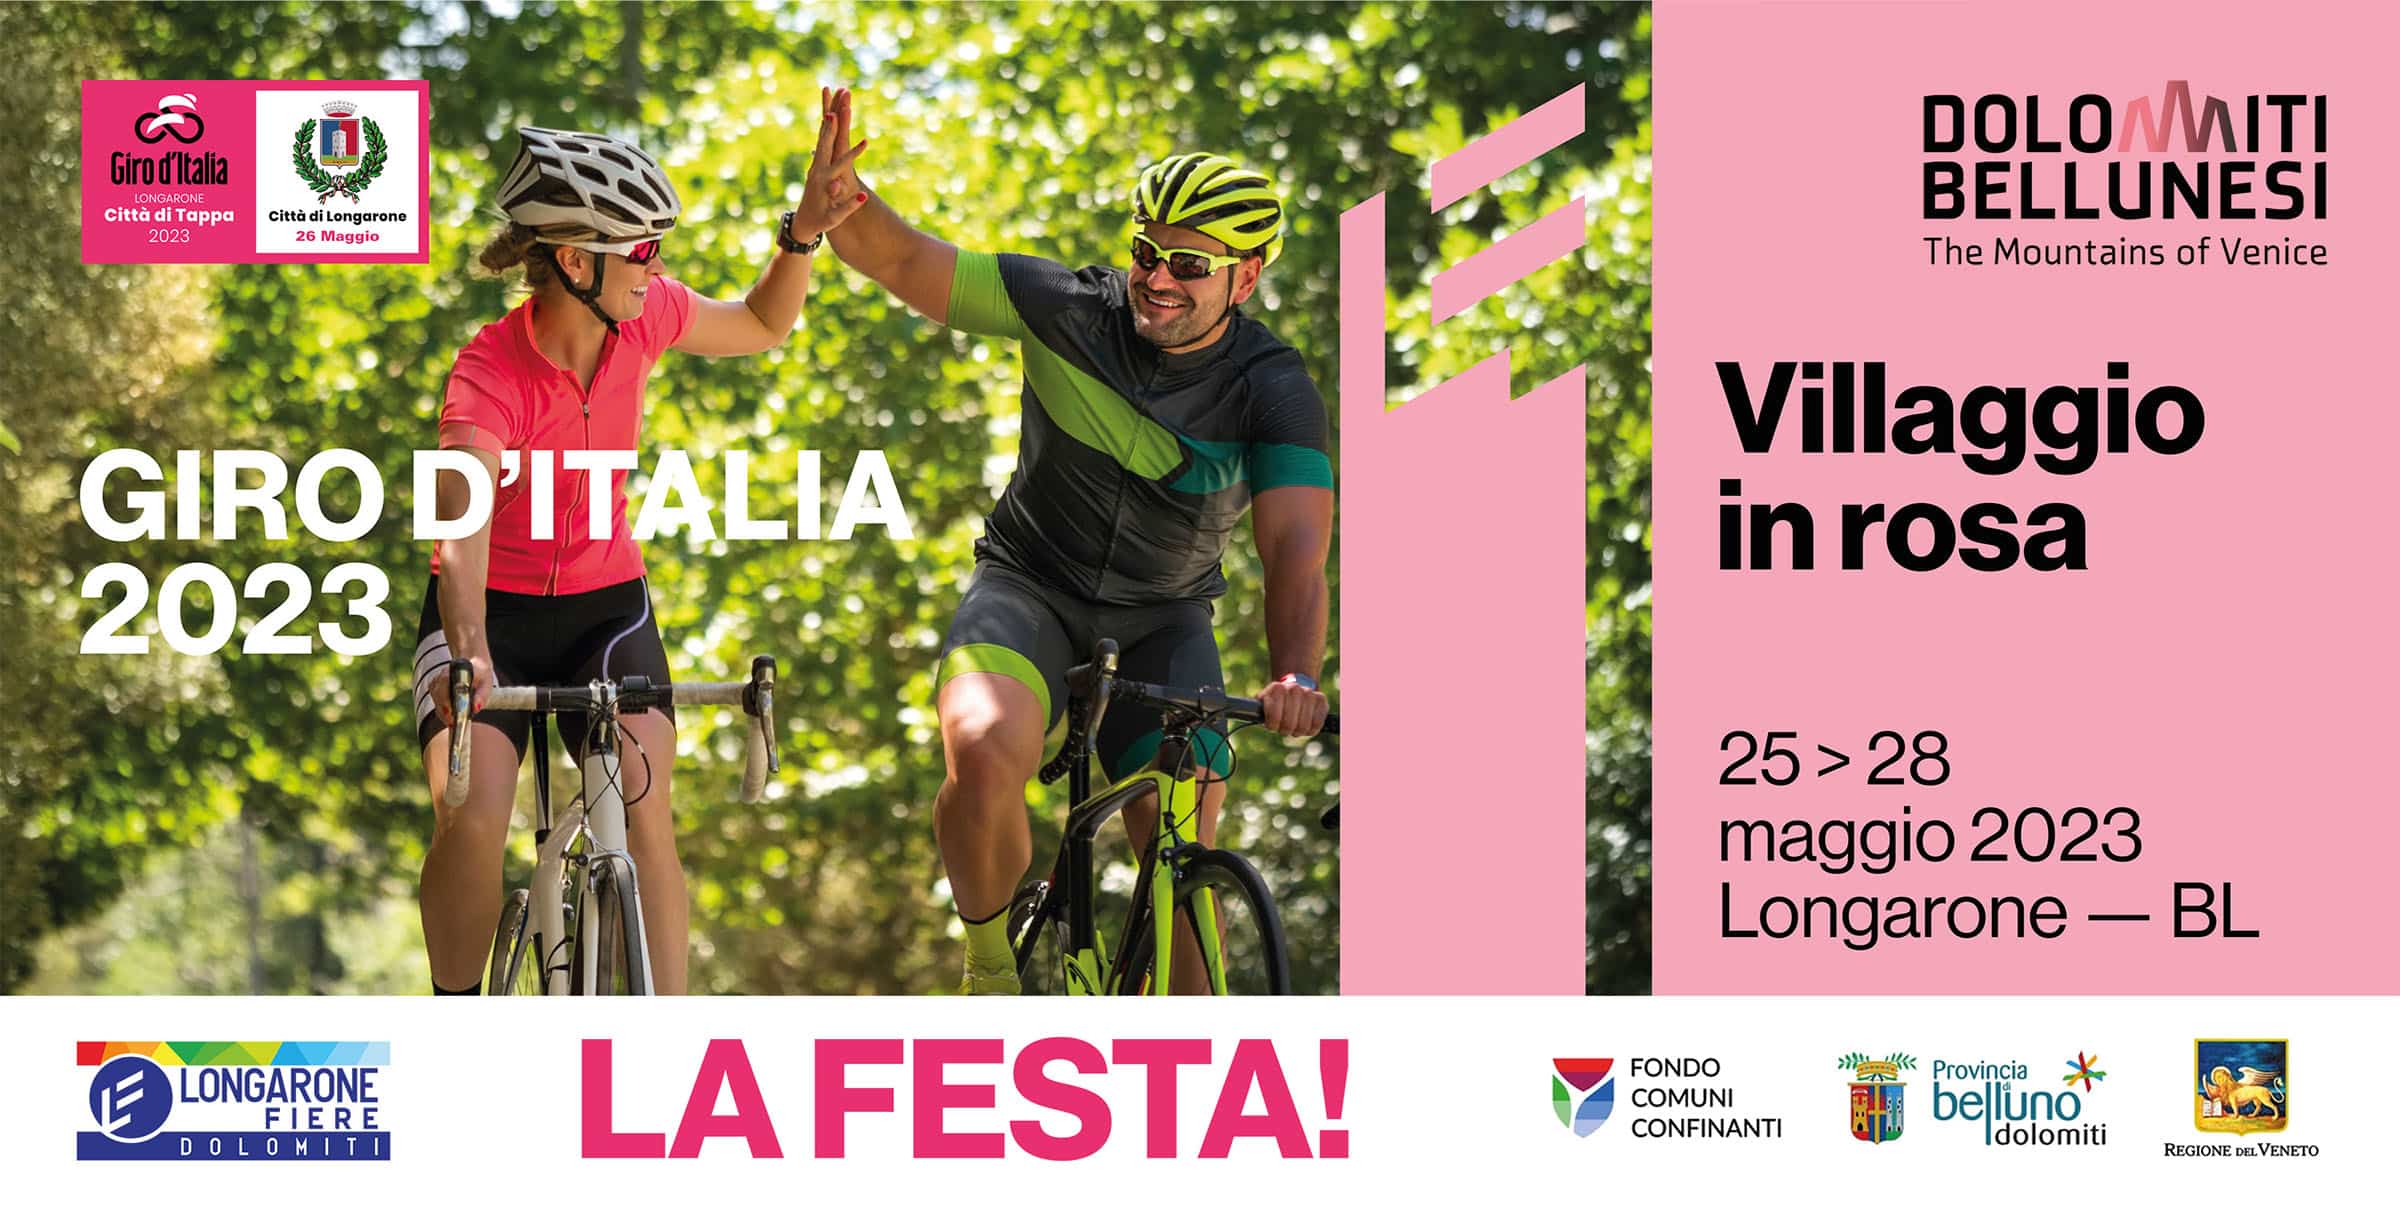 FESTA Villaggio in rosa per il Giro d'Italia a Longarone